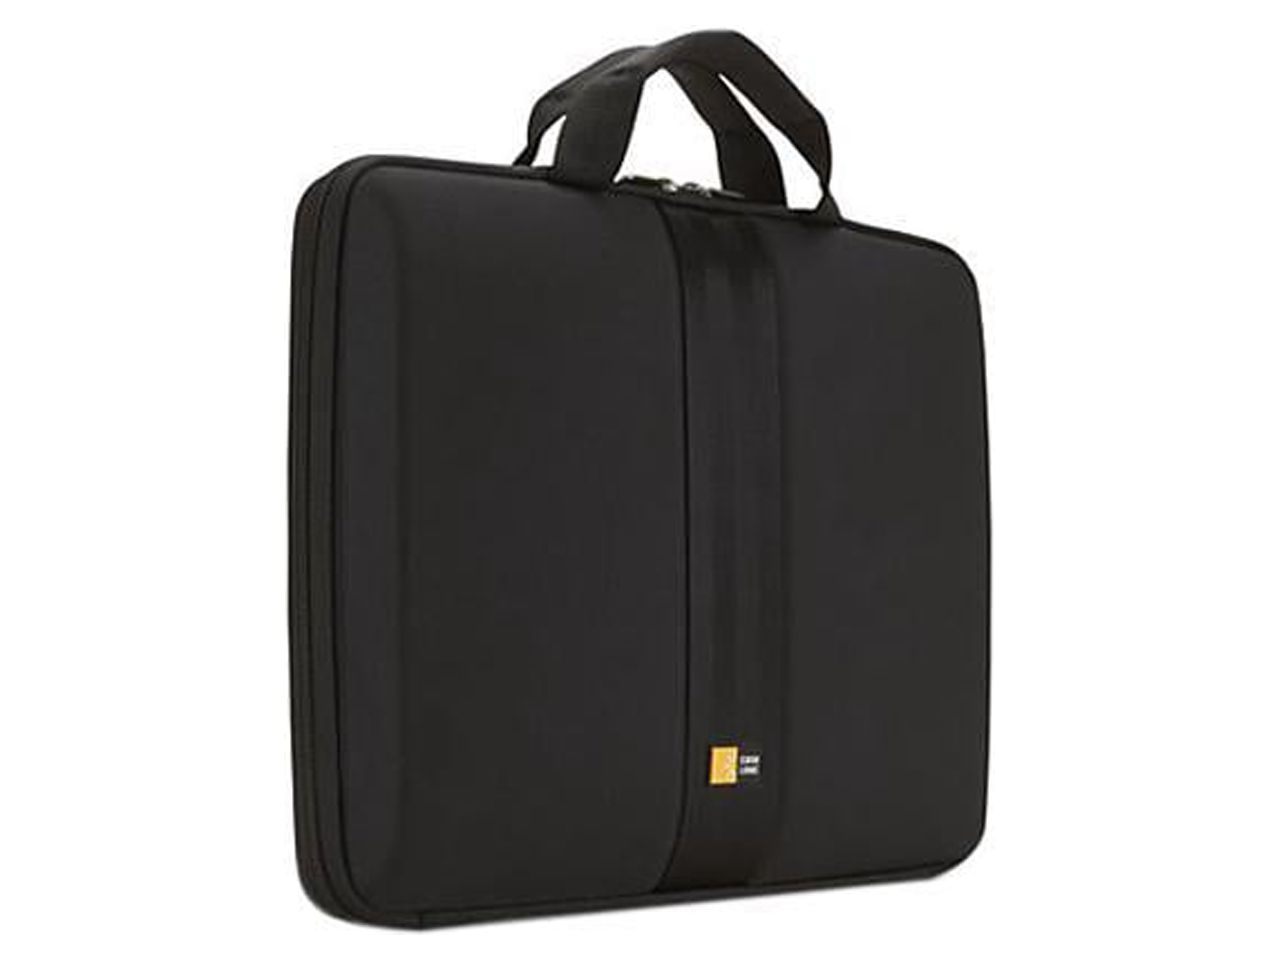 Case Logic 13.3" Laptop Sleeve, Black - image 1 of 5